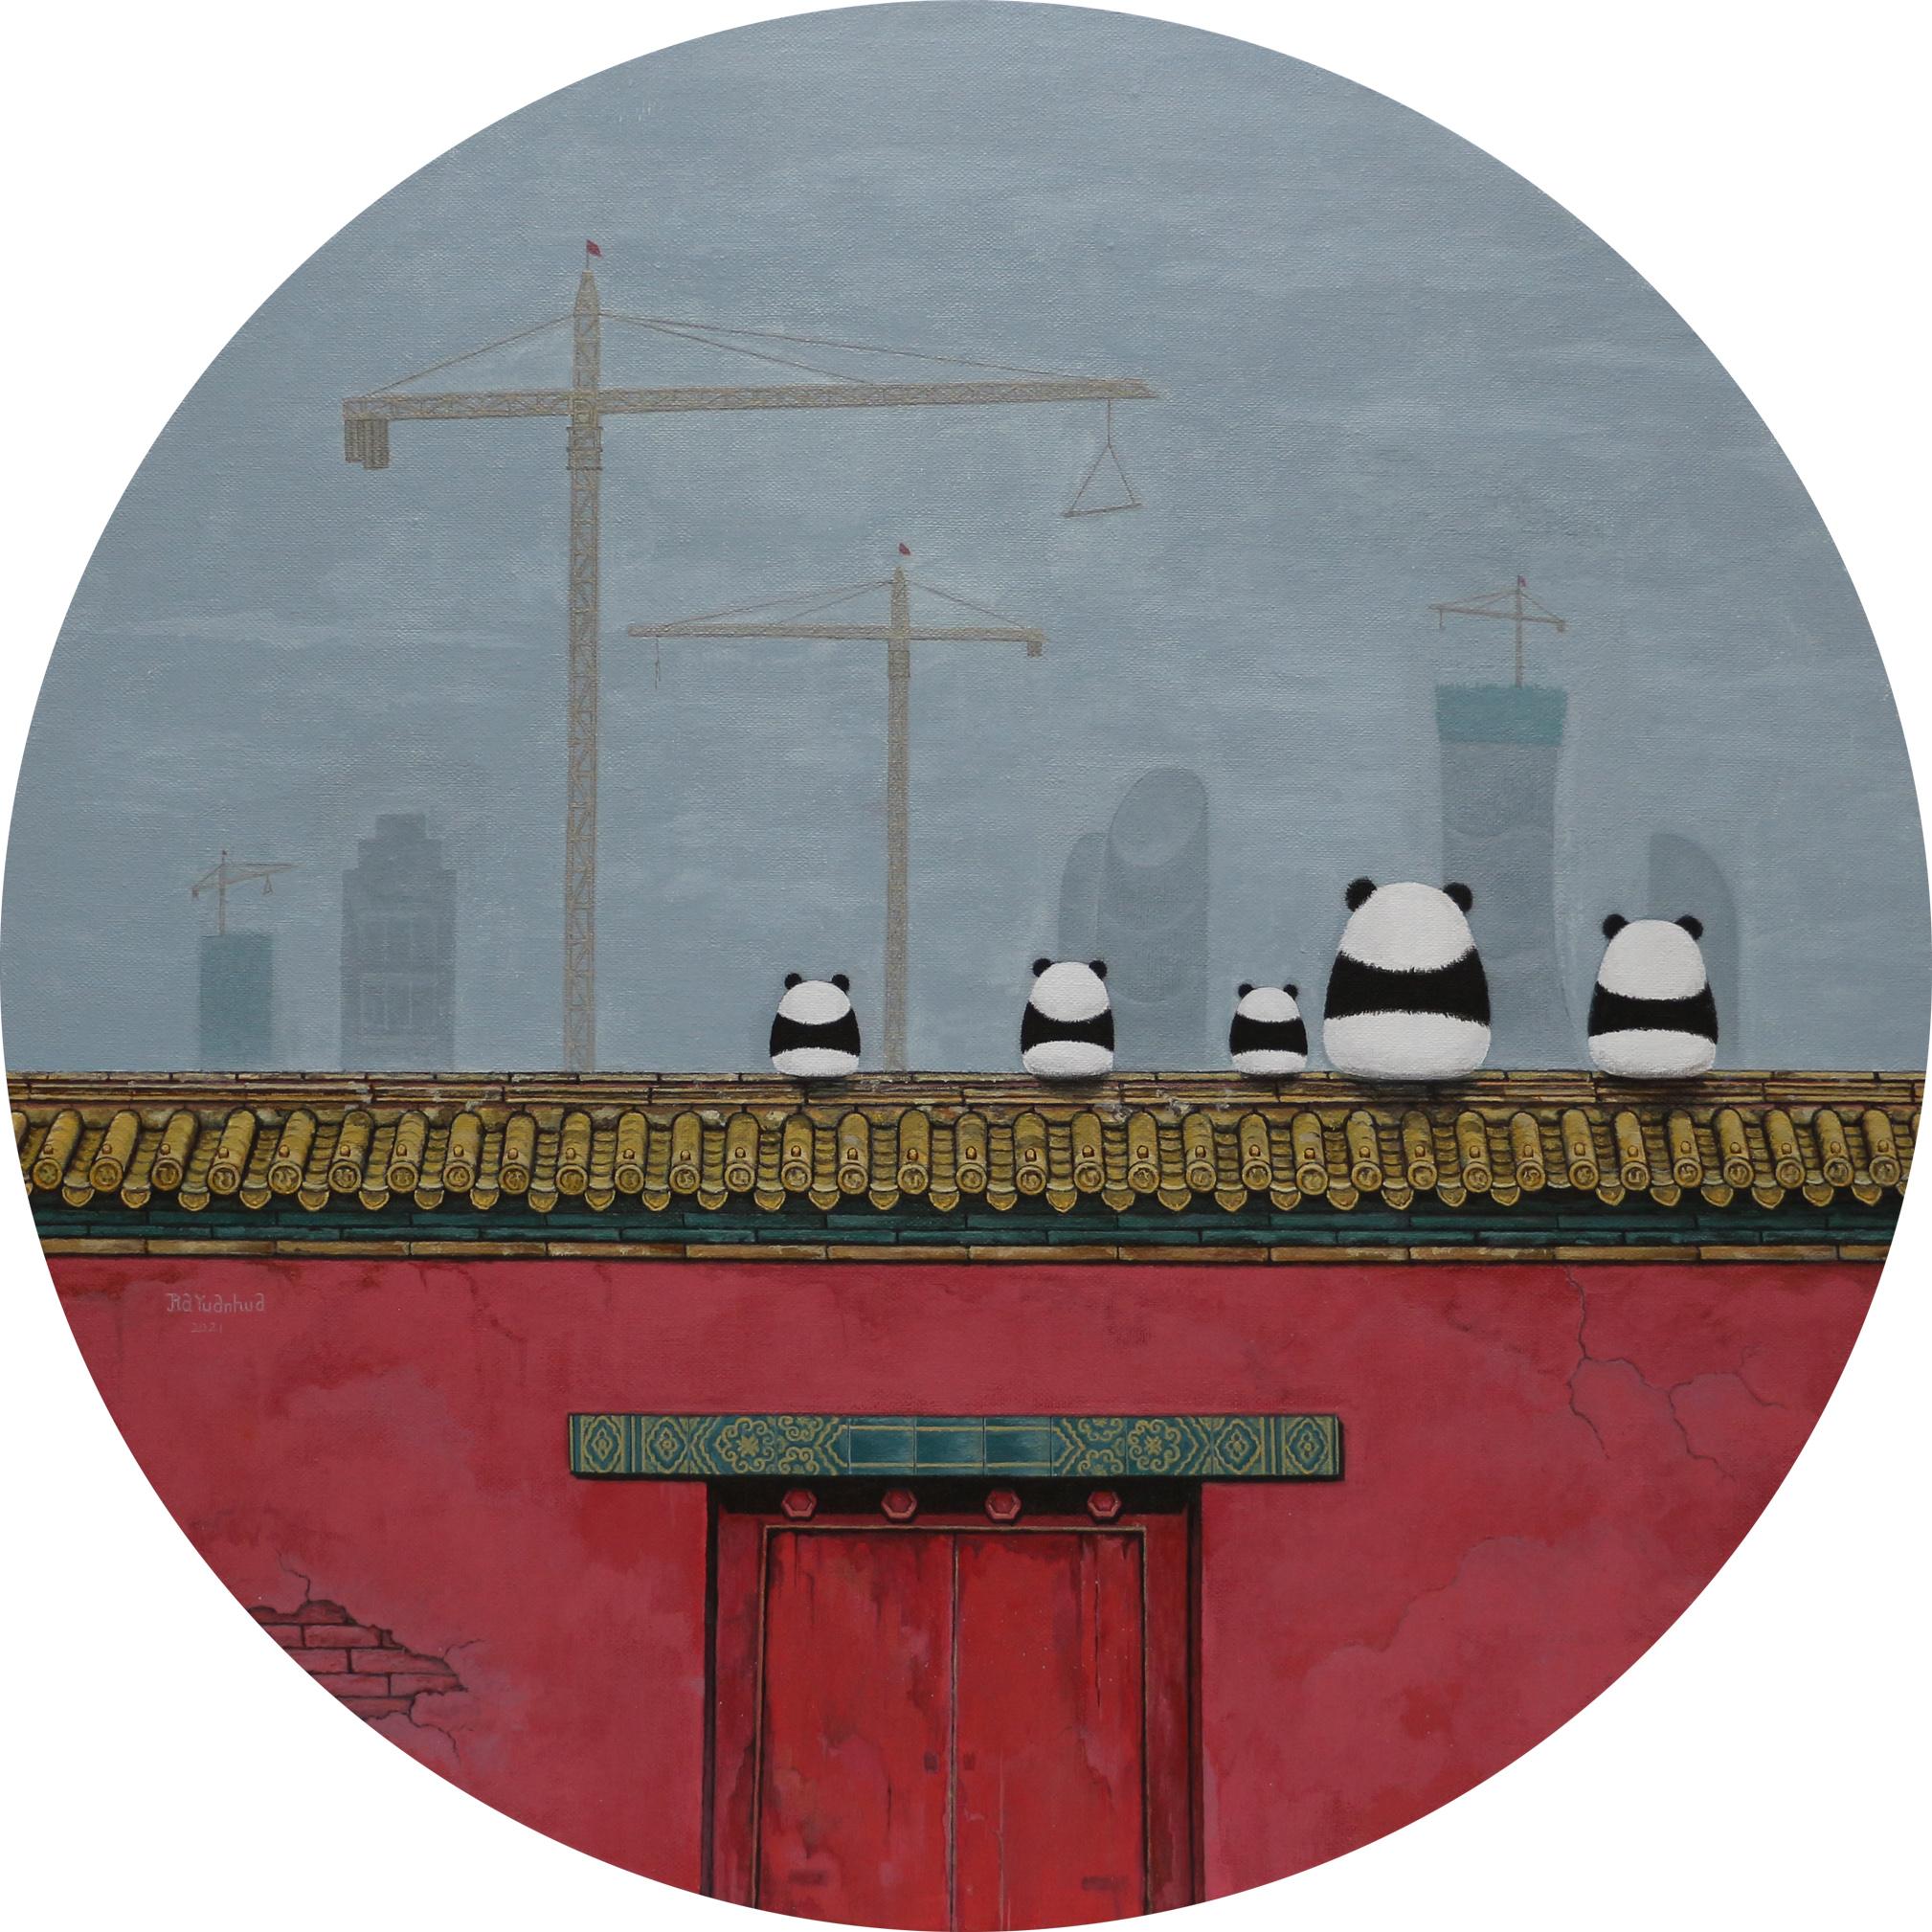 Art contemporain chinois par Jia Yuan-Hua - Sightseeing n° 7